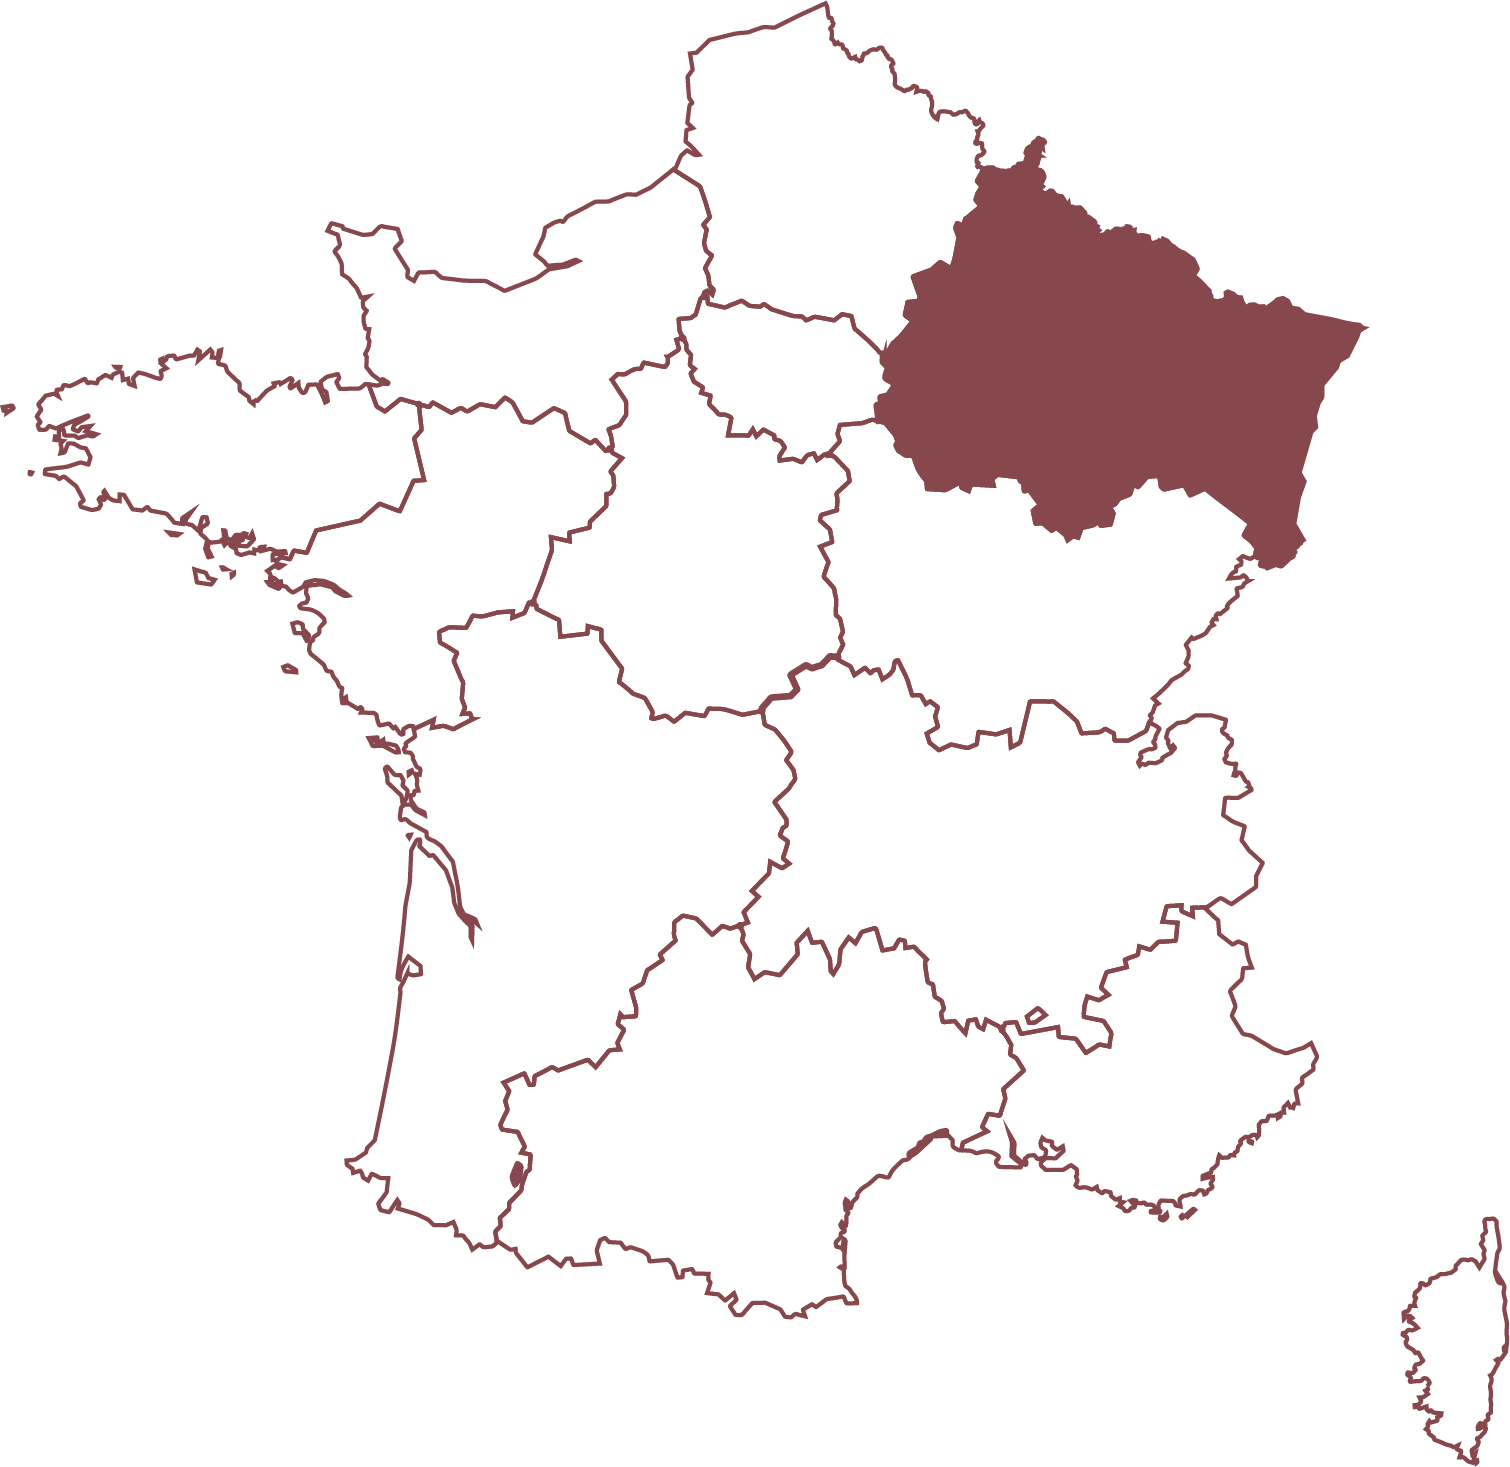 Rousseaux-Batteux